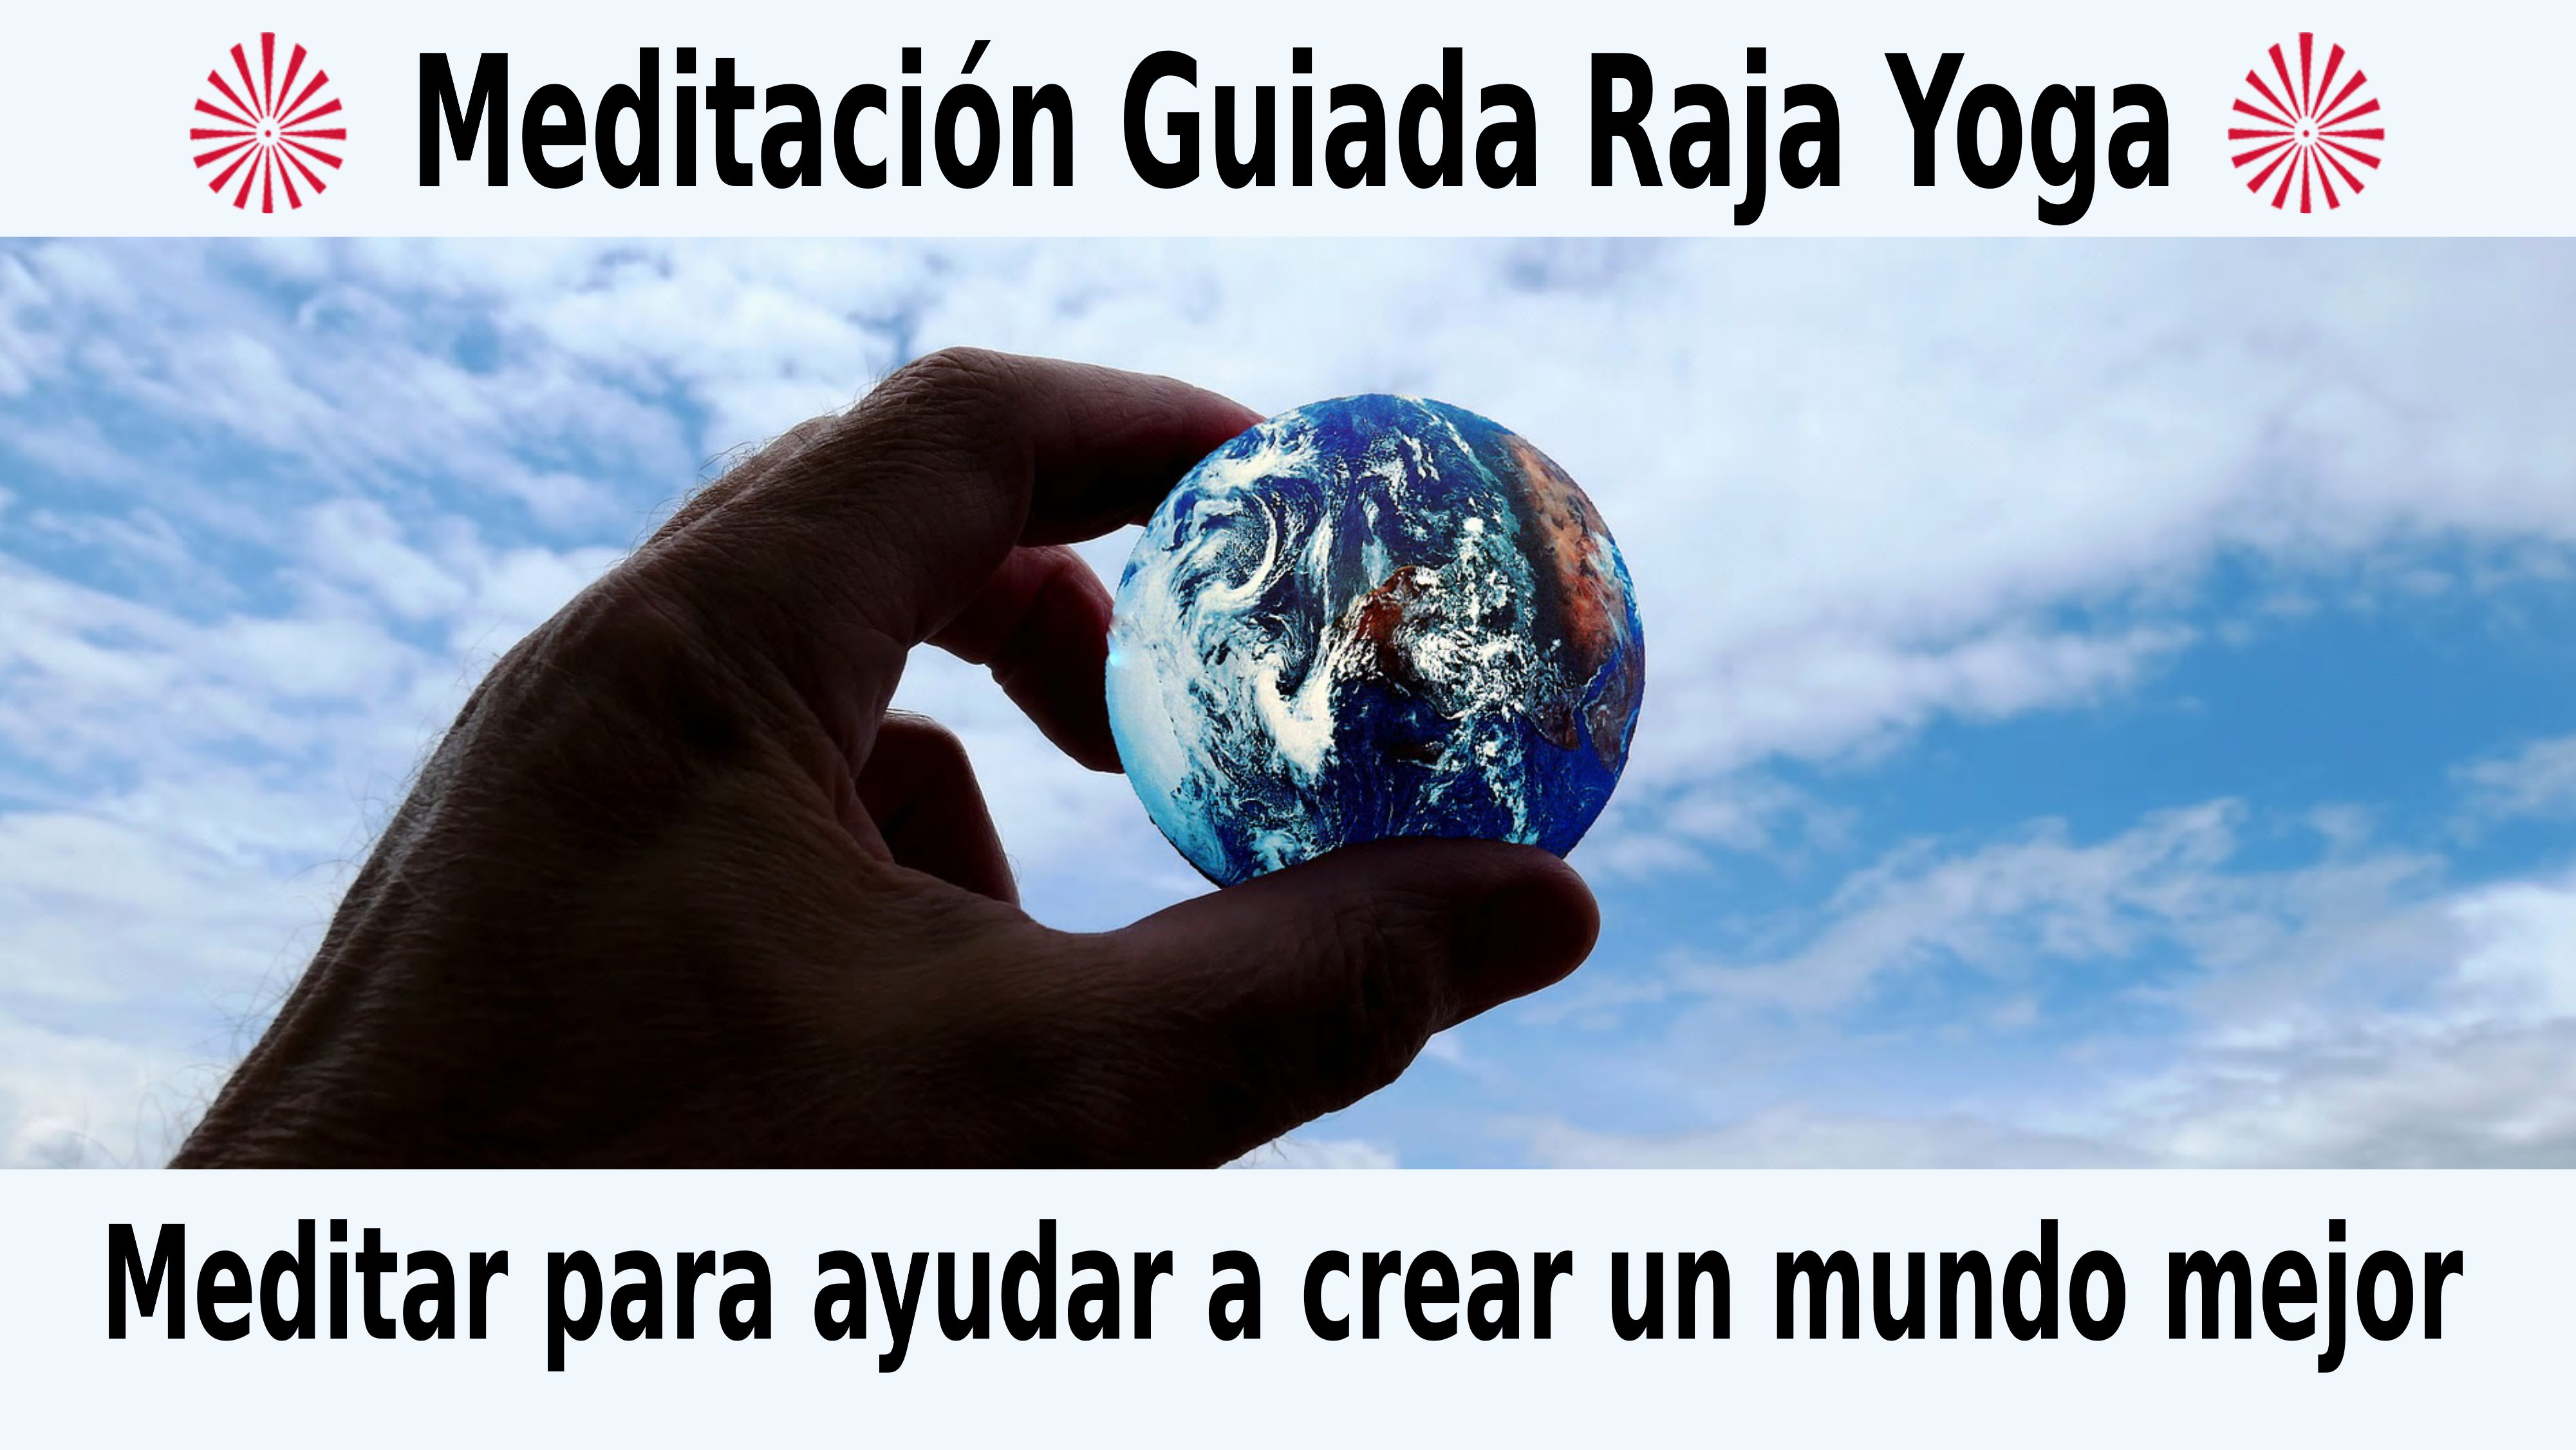 Meditación Raja Yoga: Meditar para ayudar a crear un mundo mejor (4 Noviembre 2020) On-line desde Sevilla